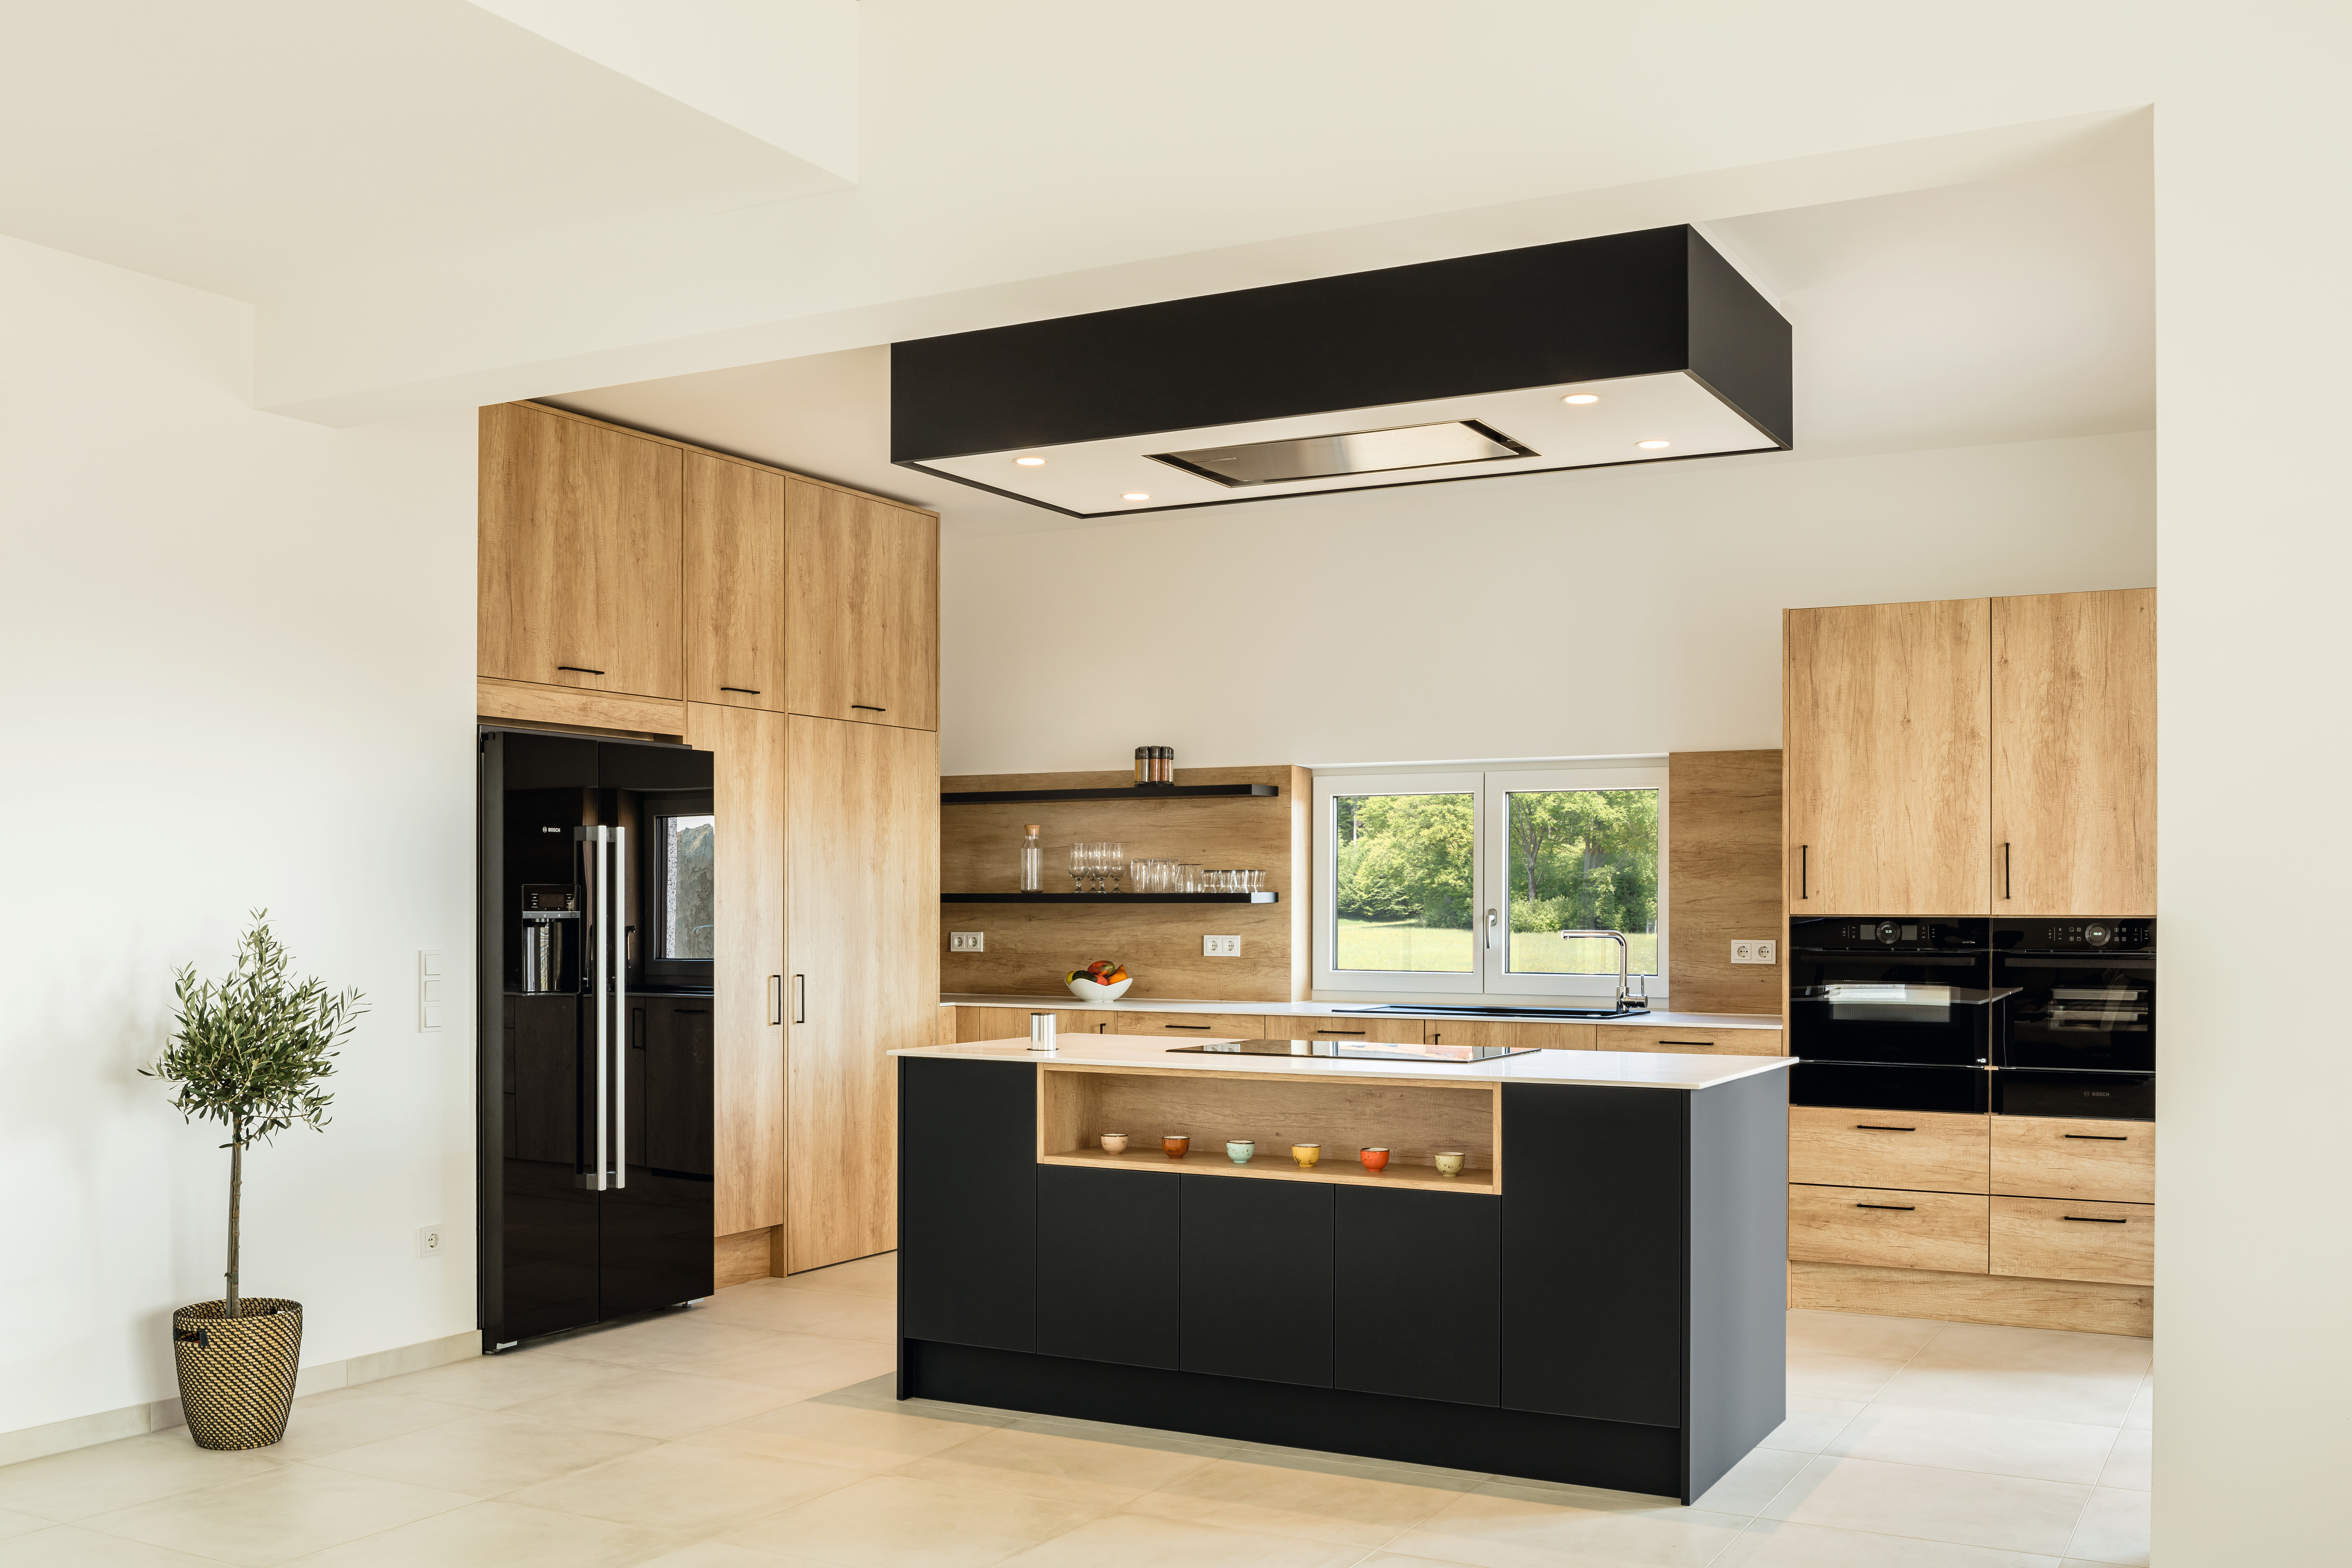 Der „Nearly Black“ Farbton U599 PM Indigoblau verleiht der Küche einen eleganten Charakter.